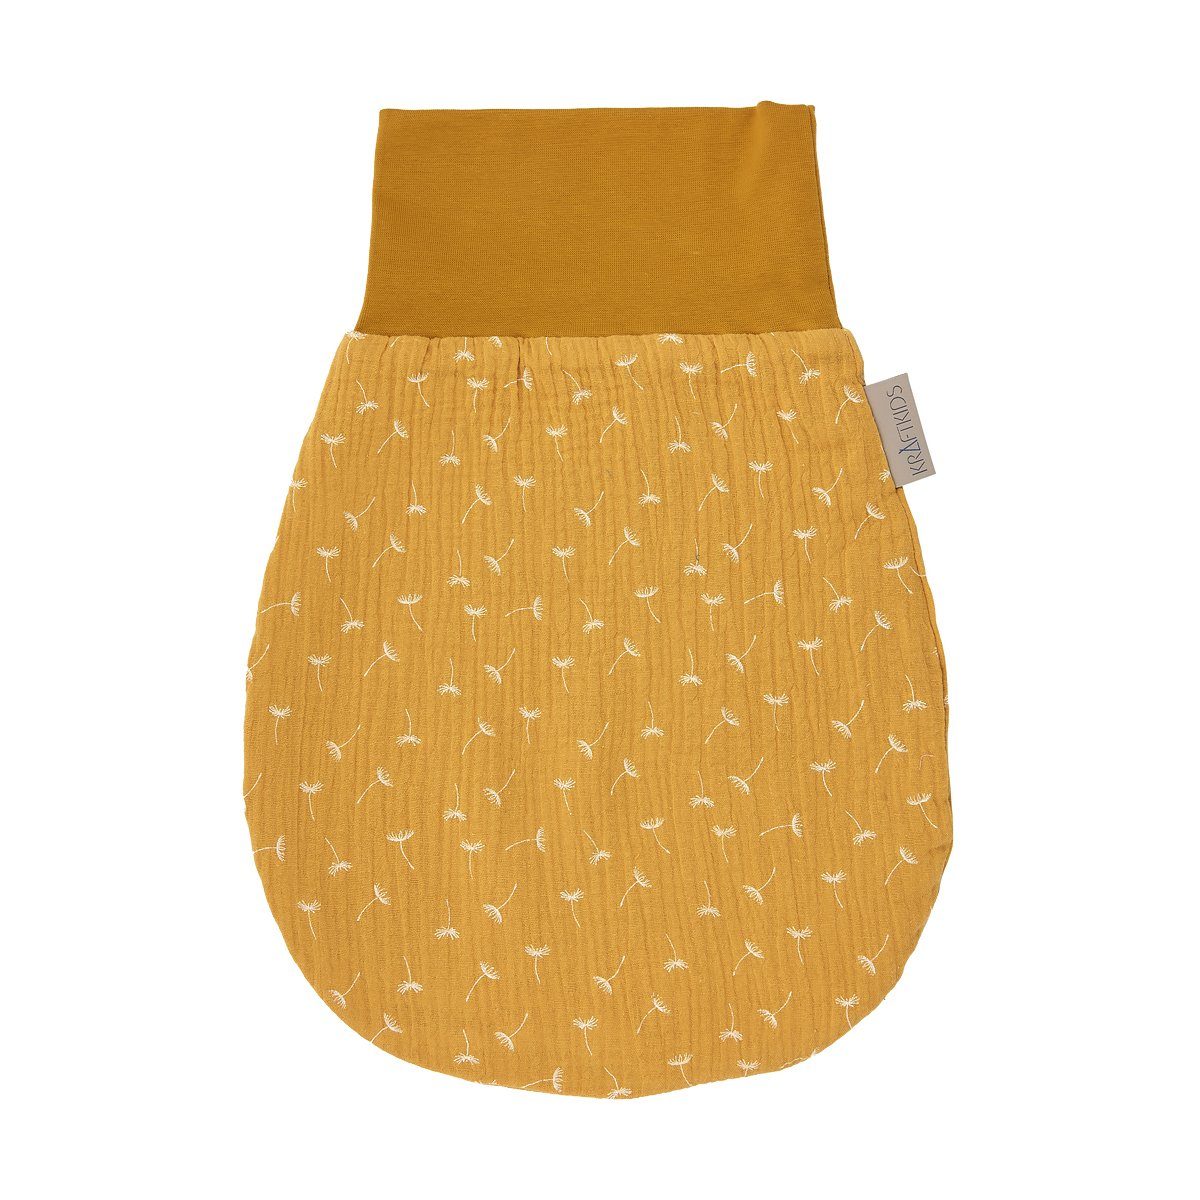 KraftKids Babyschlafsack Musselin gelb Pusteblumen, Sommer/Frühling-Variante, 100% Baumwolle, hochwärtiger Stoff, zwei Schichten Stoff | Schlafsäcke